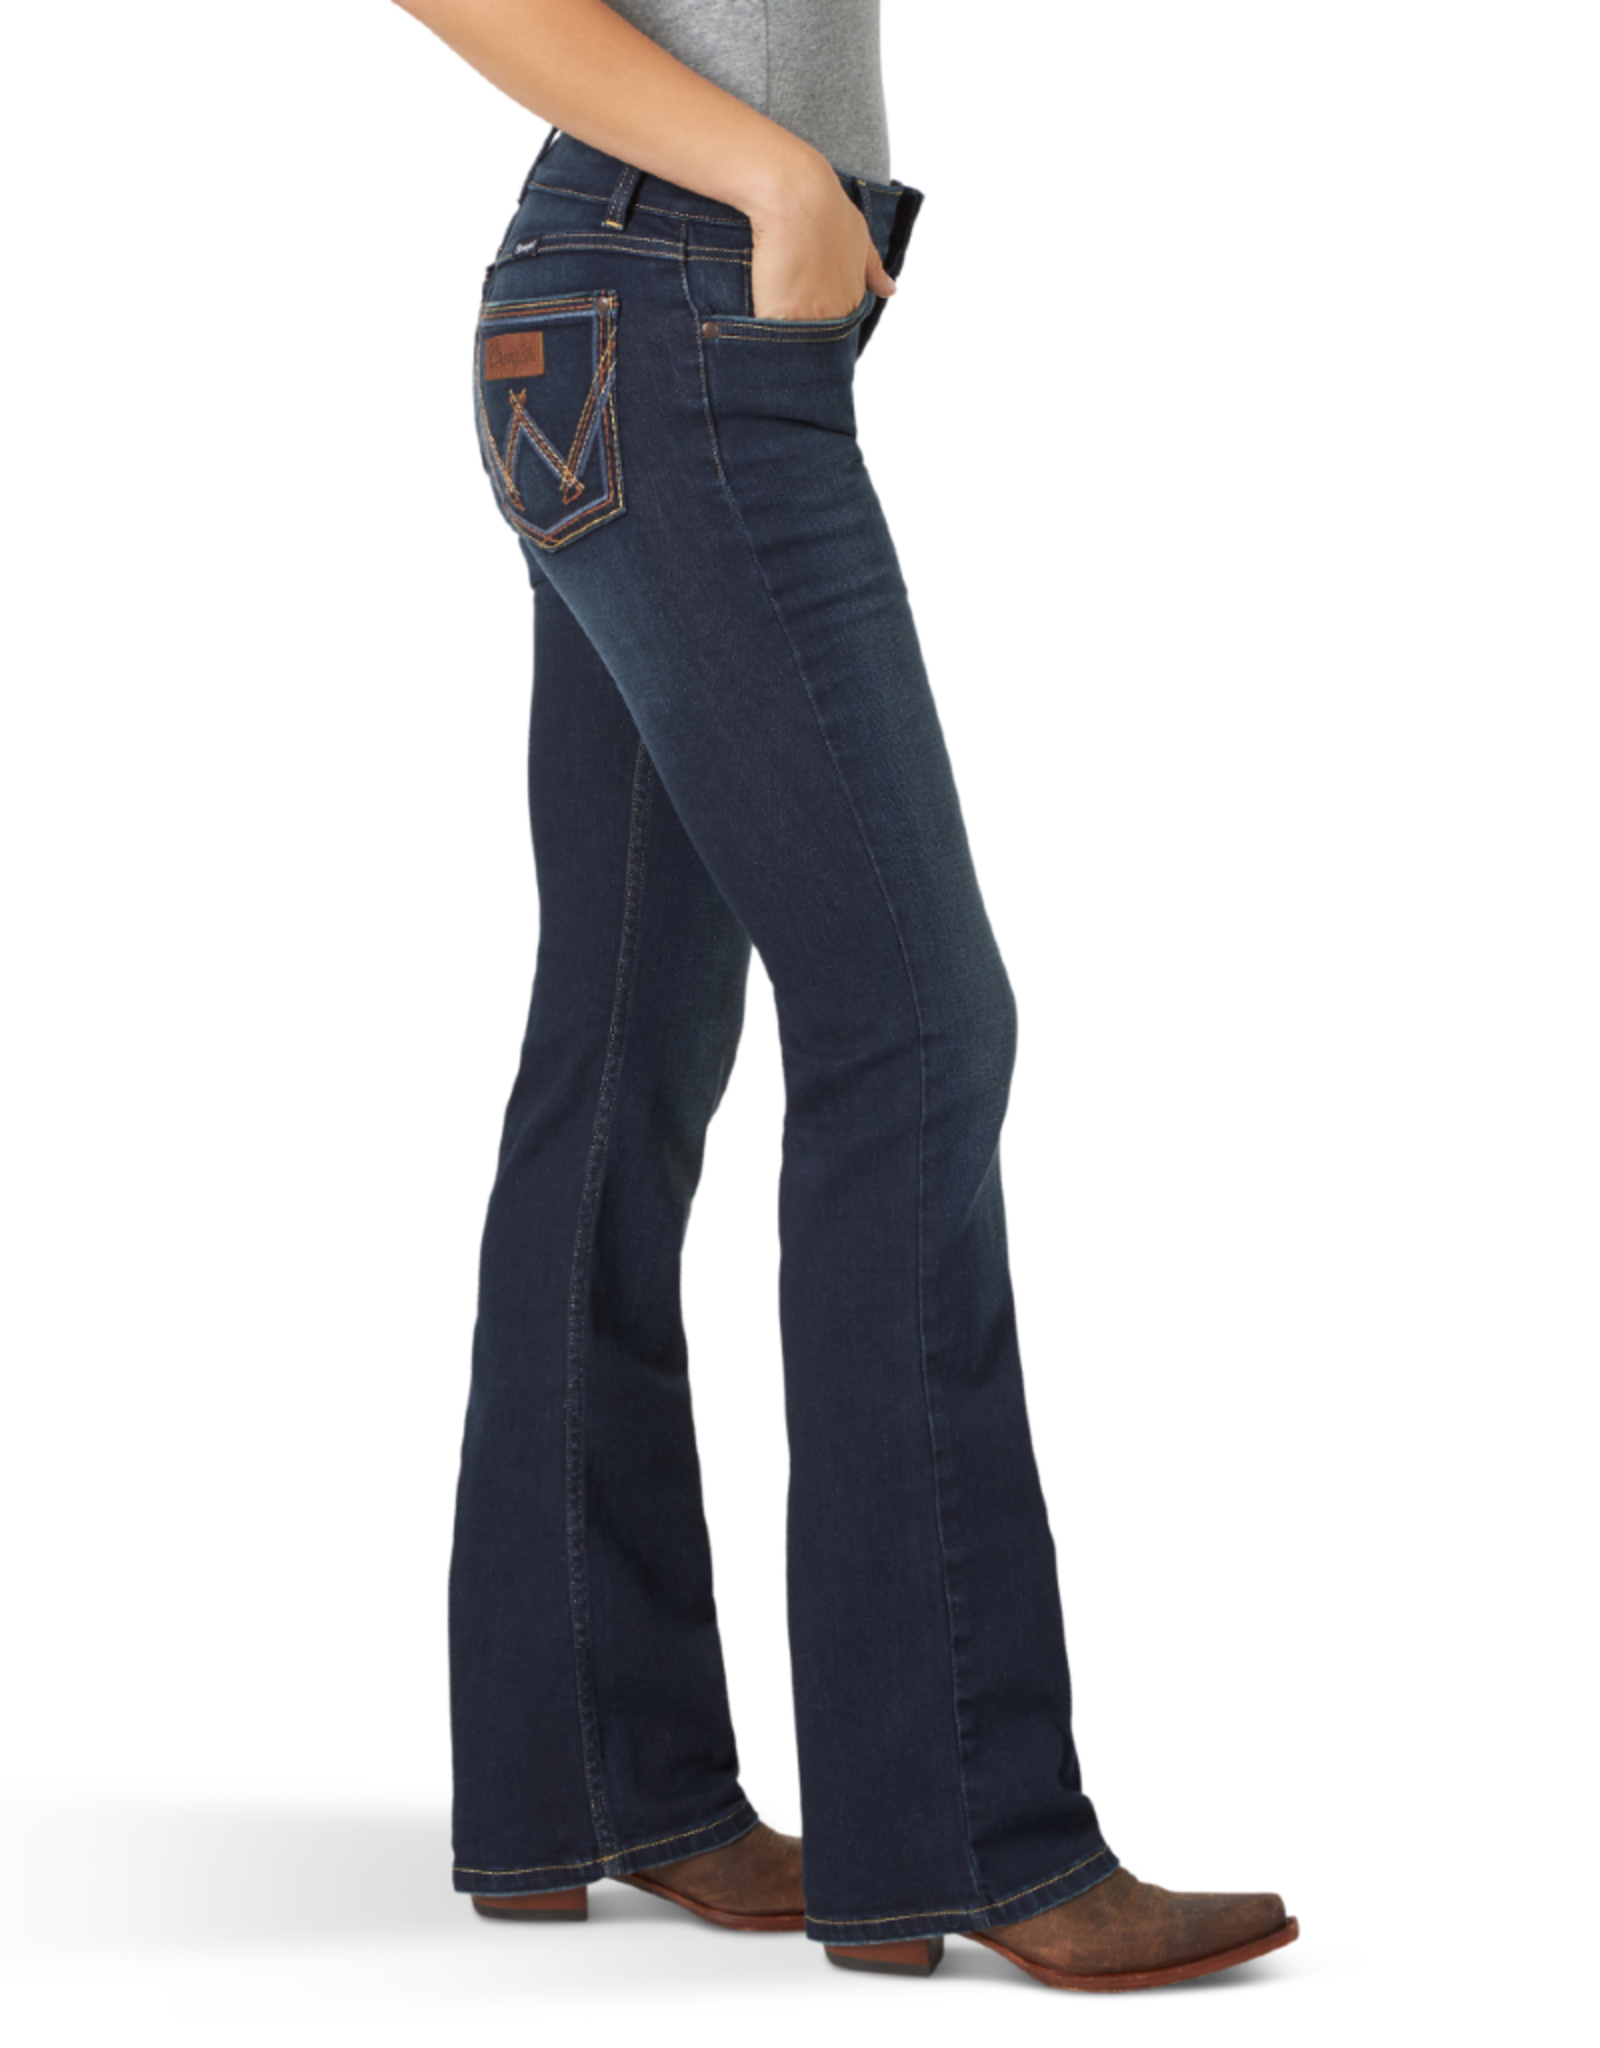 wrangler mae retro jeans